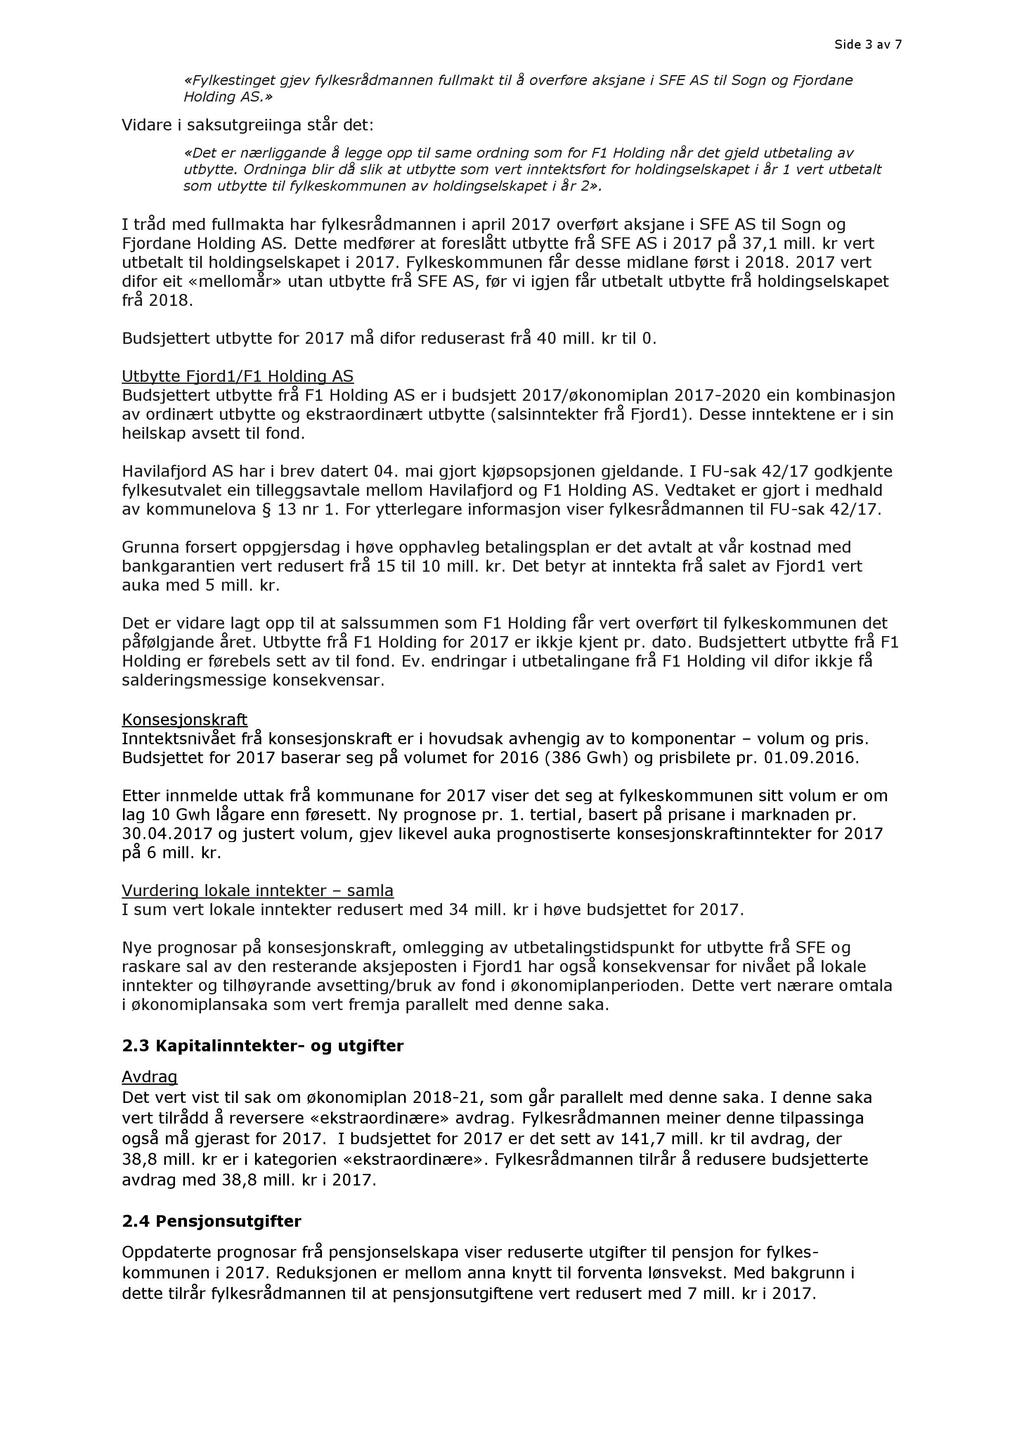 Side 3 av 7 «Fylkestinget gjev fylkesrådmannen fullmakt til å overføre aksjane i SFE AS til Sogn og Fjordane Holding AS.